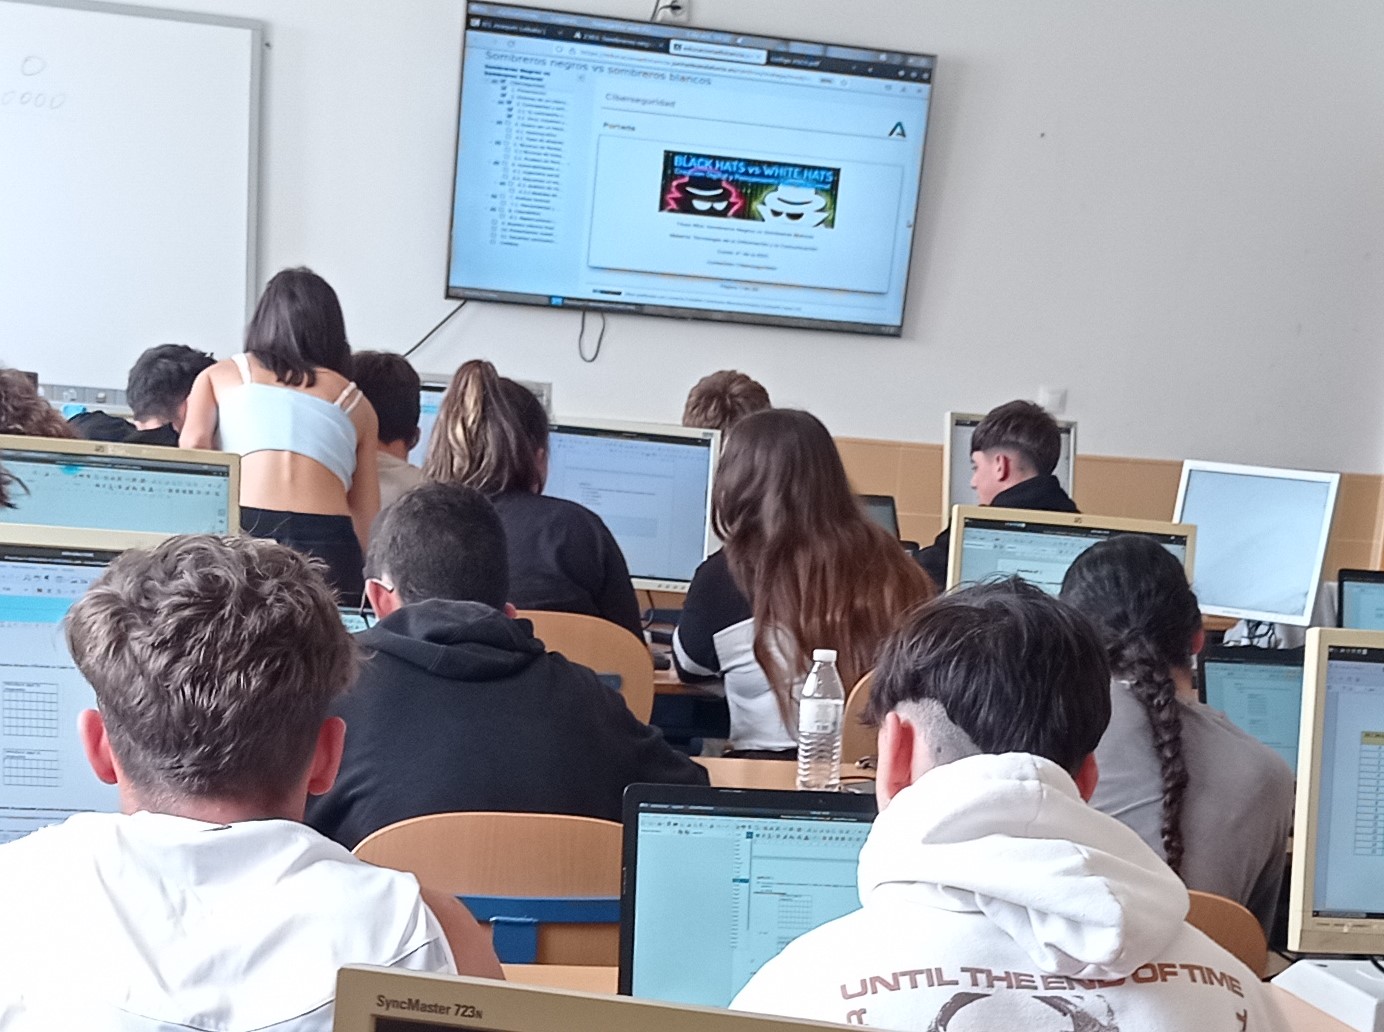 Presentación mediante pantalla en el aula de informática